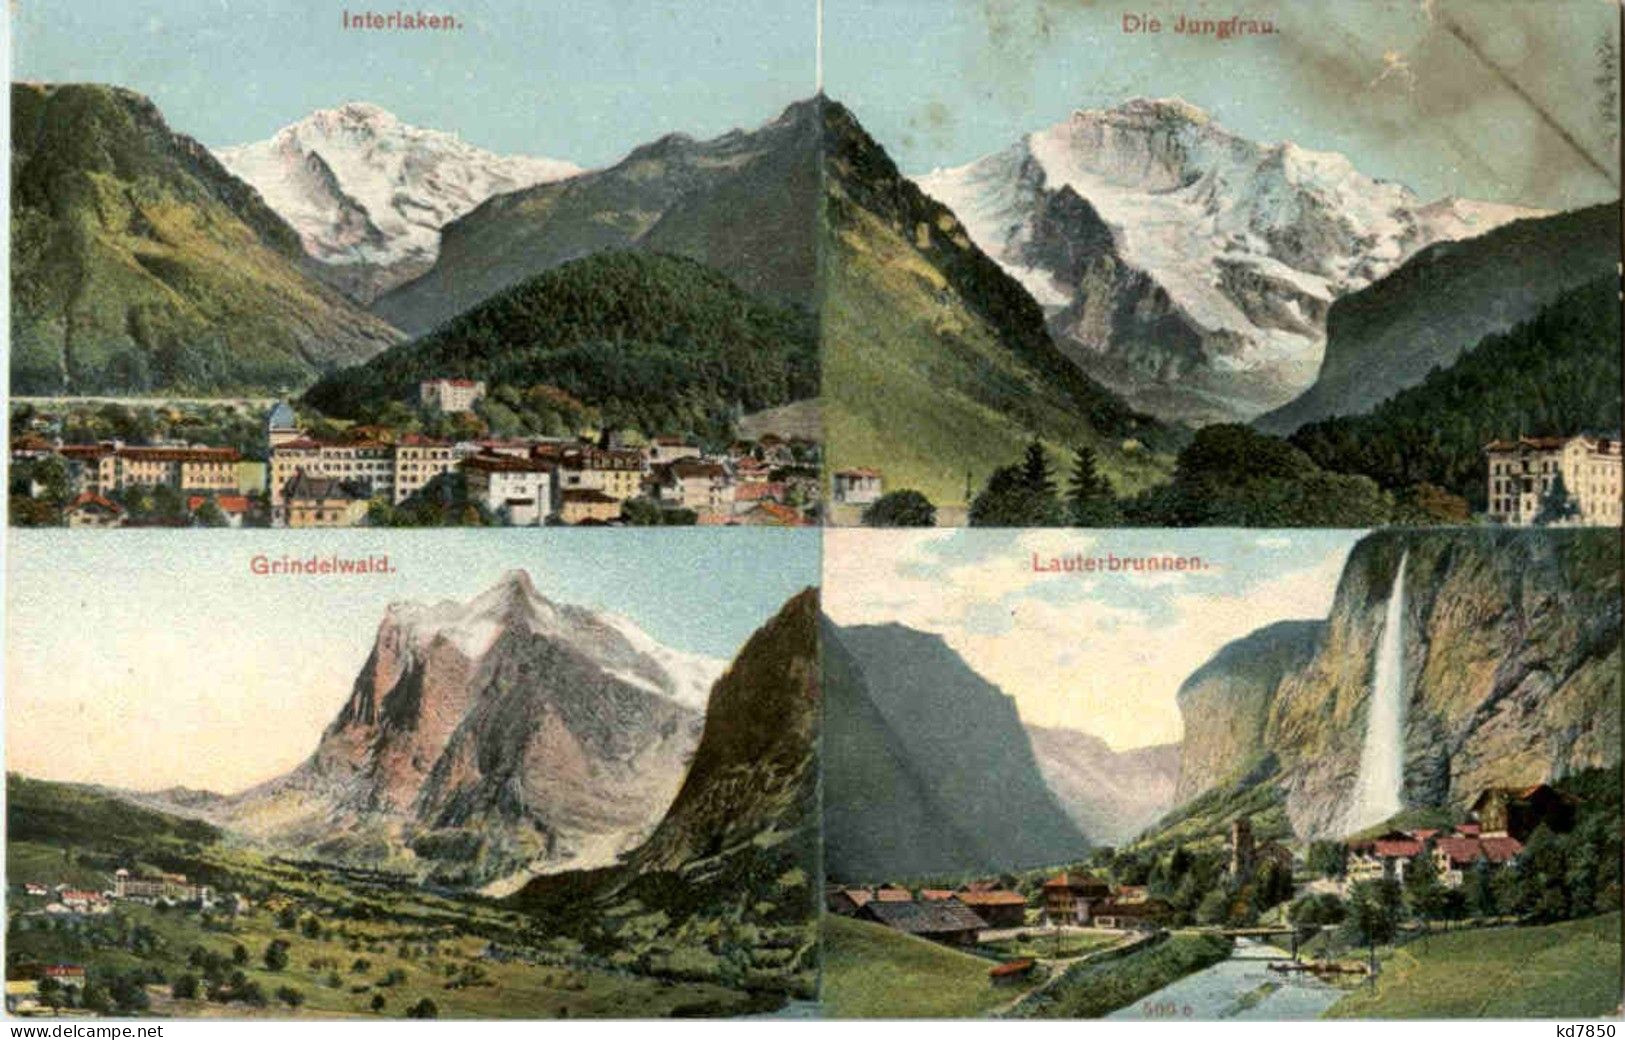 Interlaken - Grindelwald - Lauterbrunnen - Grindelwald